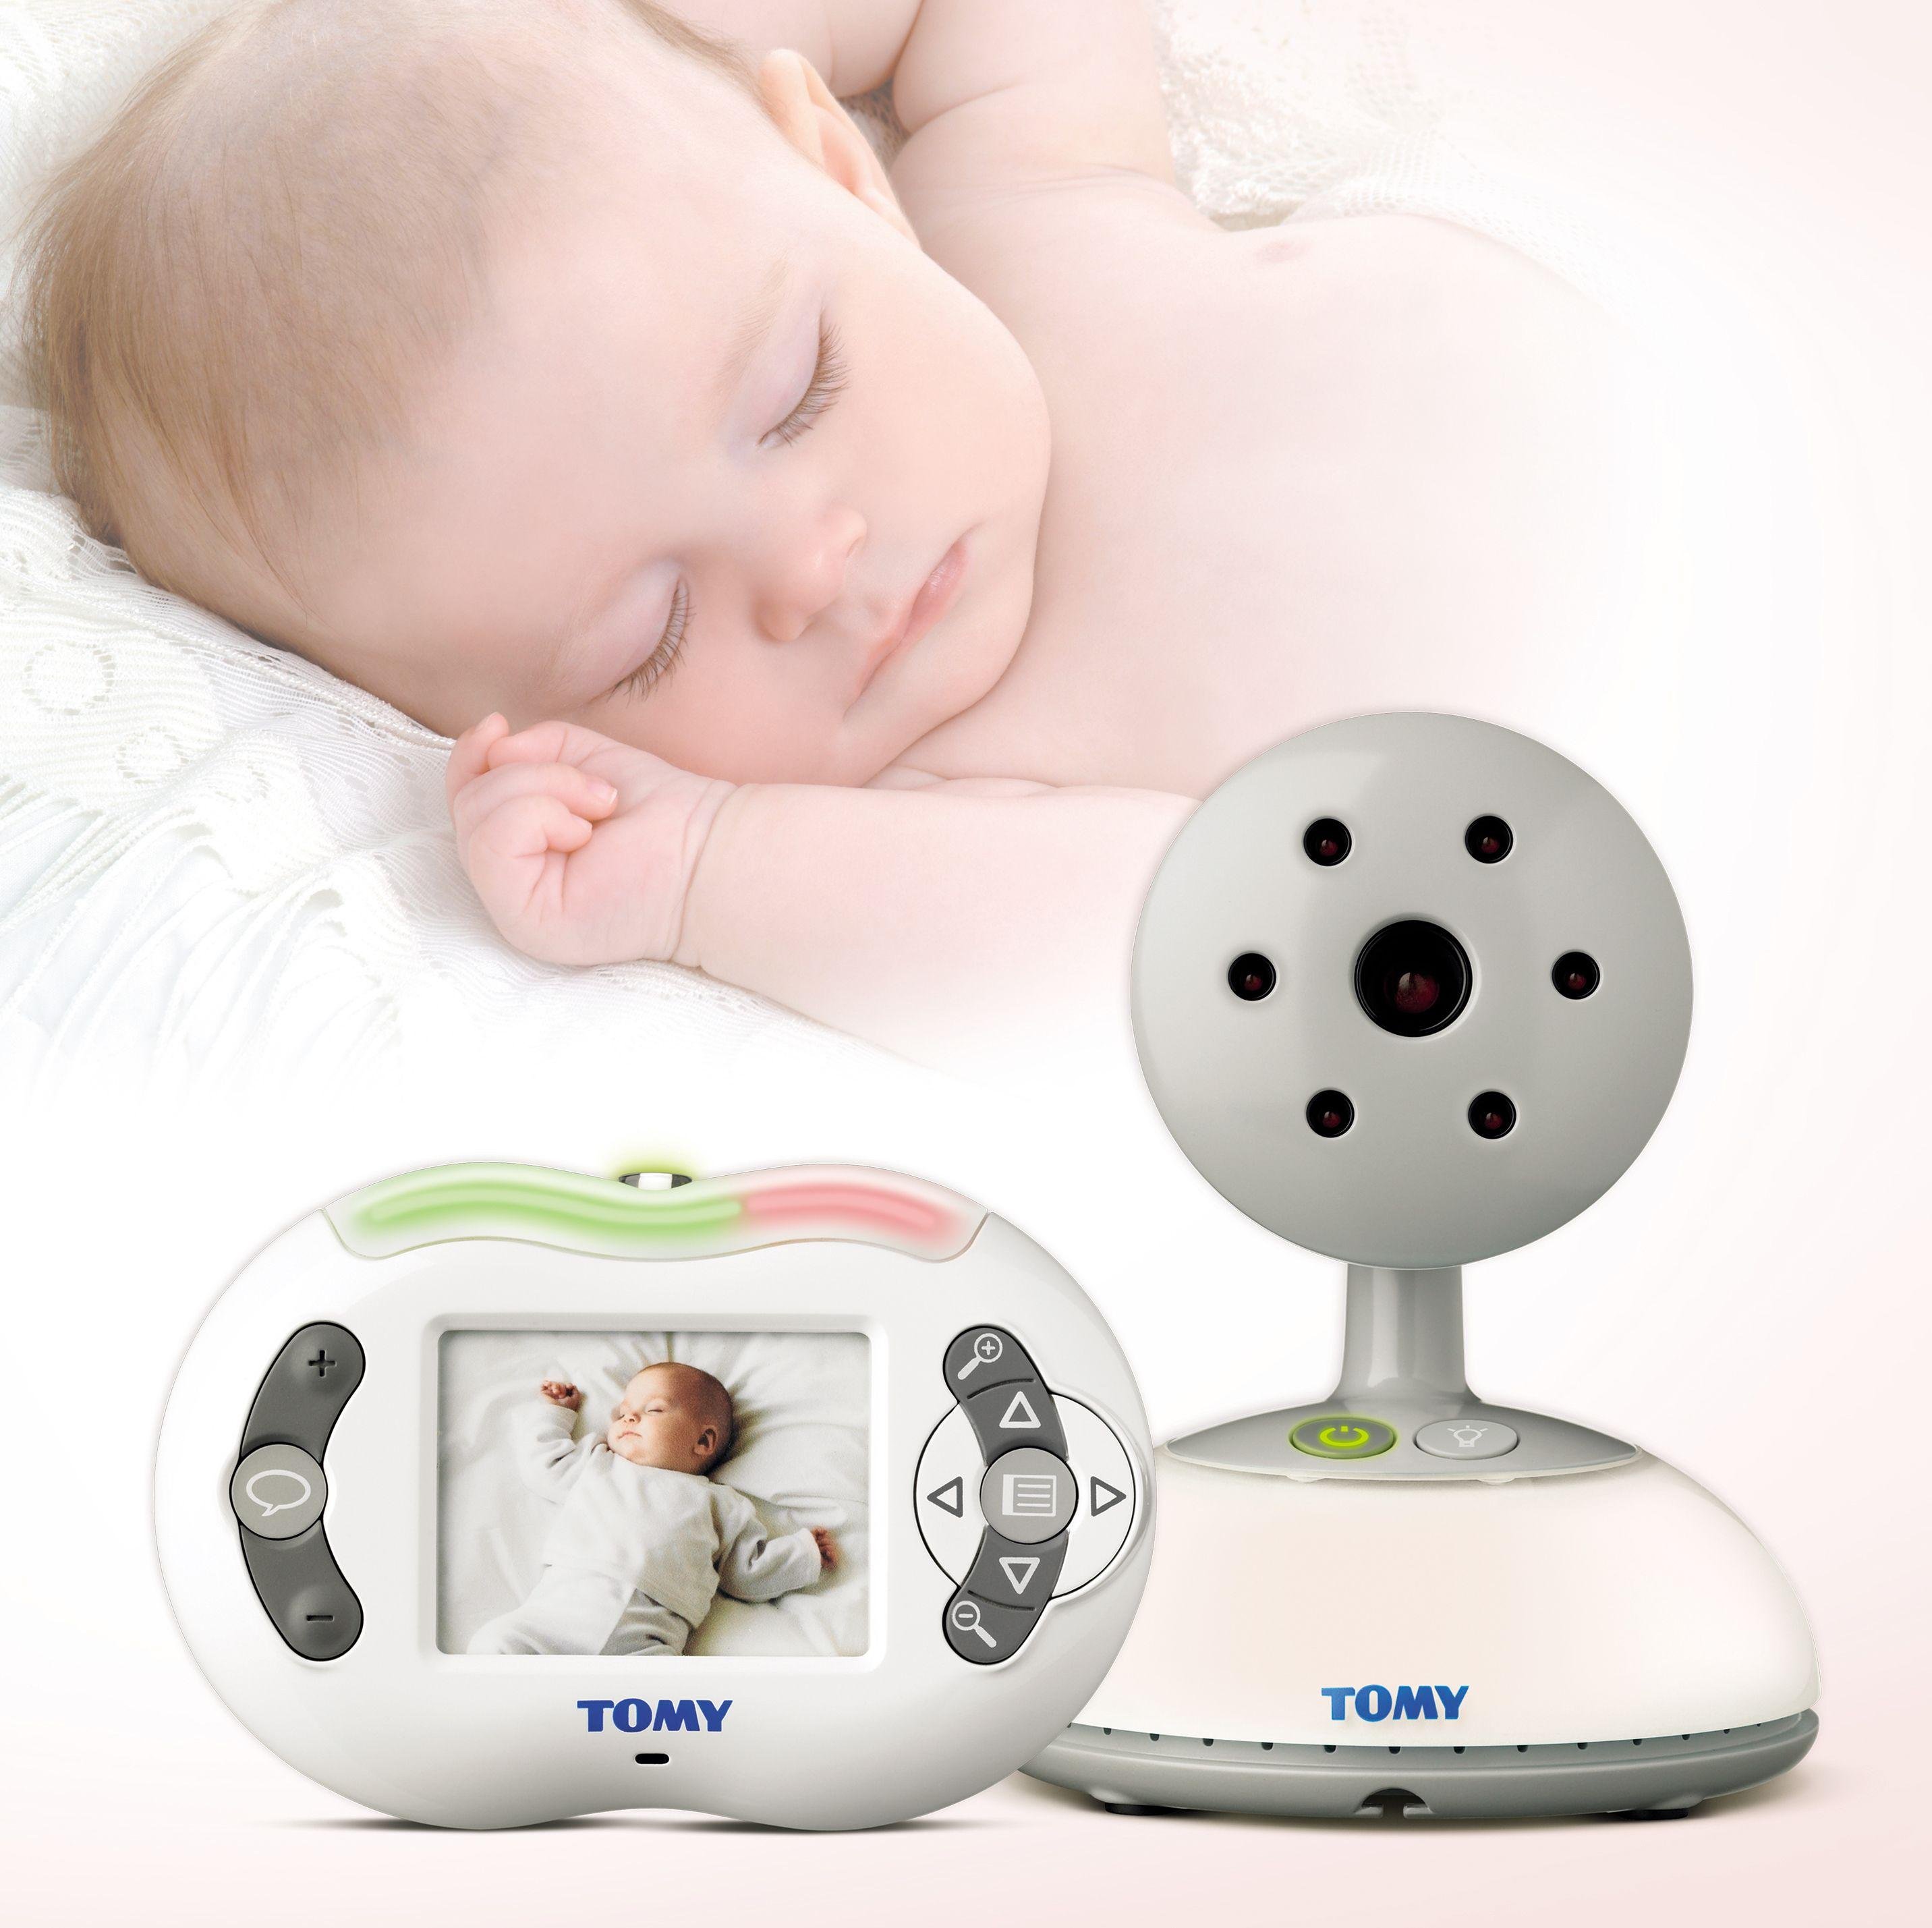 Tomy TFV600 Digital Video Baby Monitor